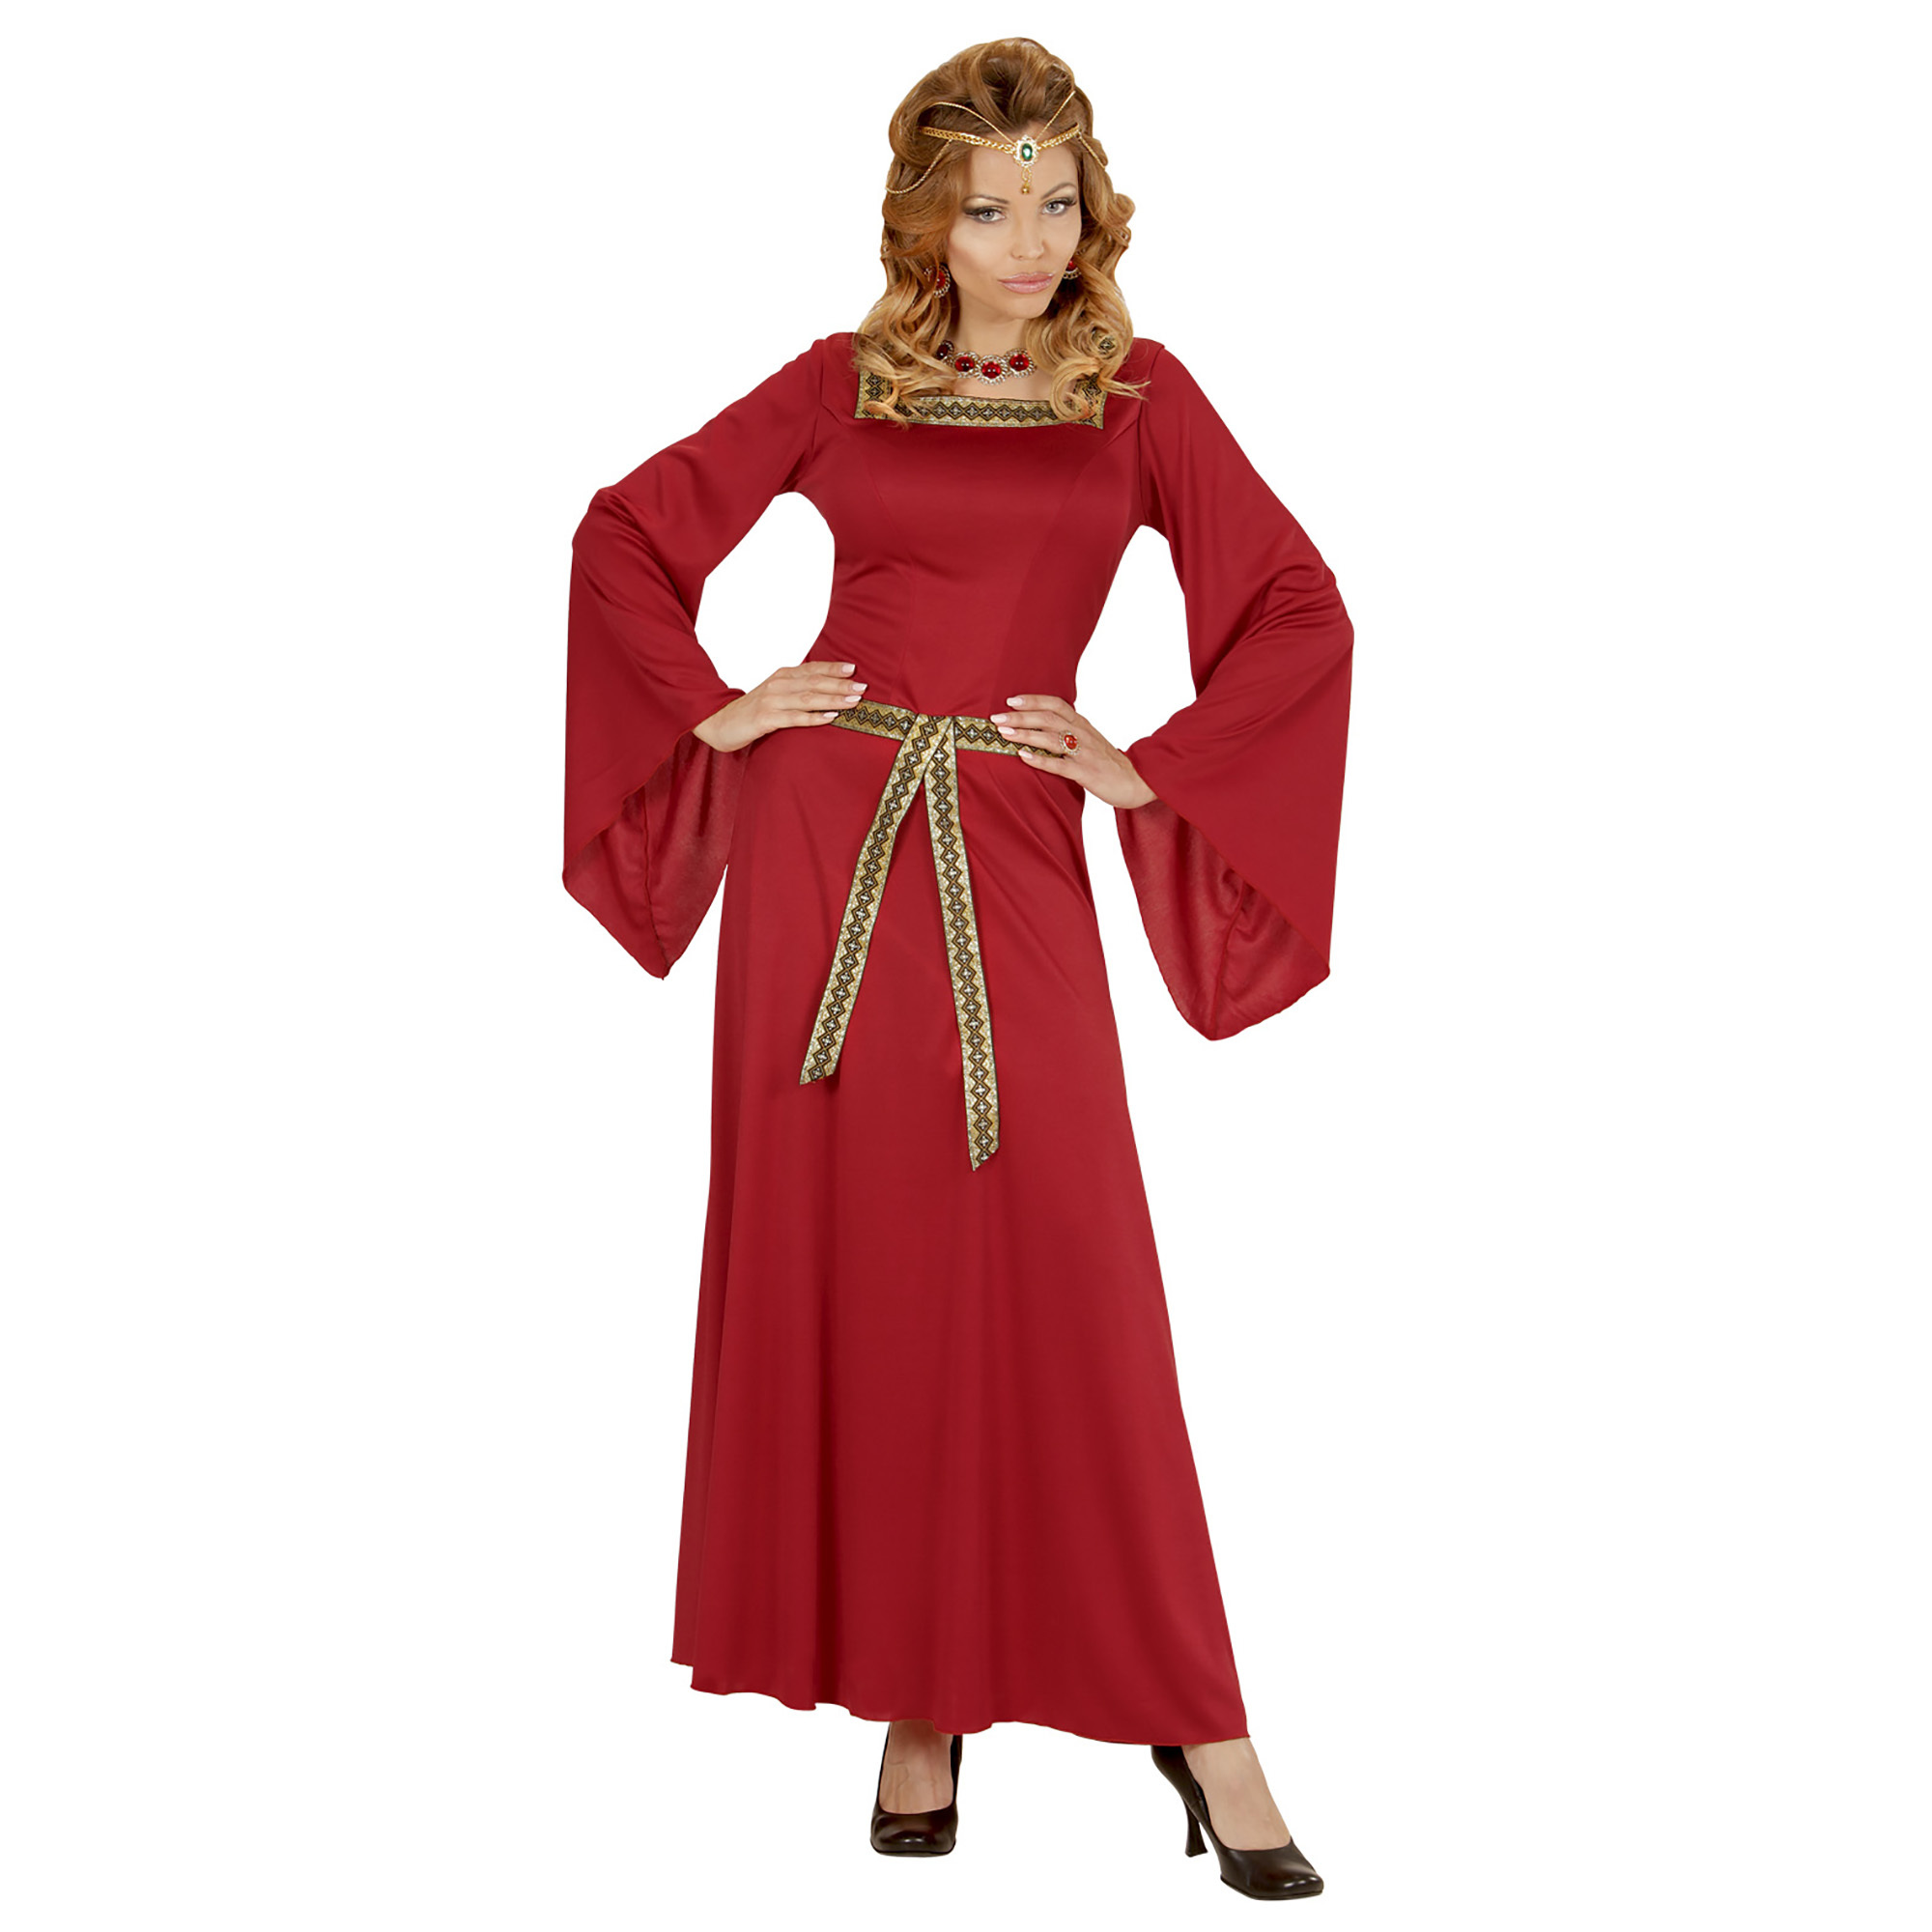 kasteelmeisje dames kostuum middeleeuws